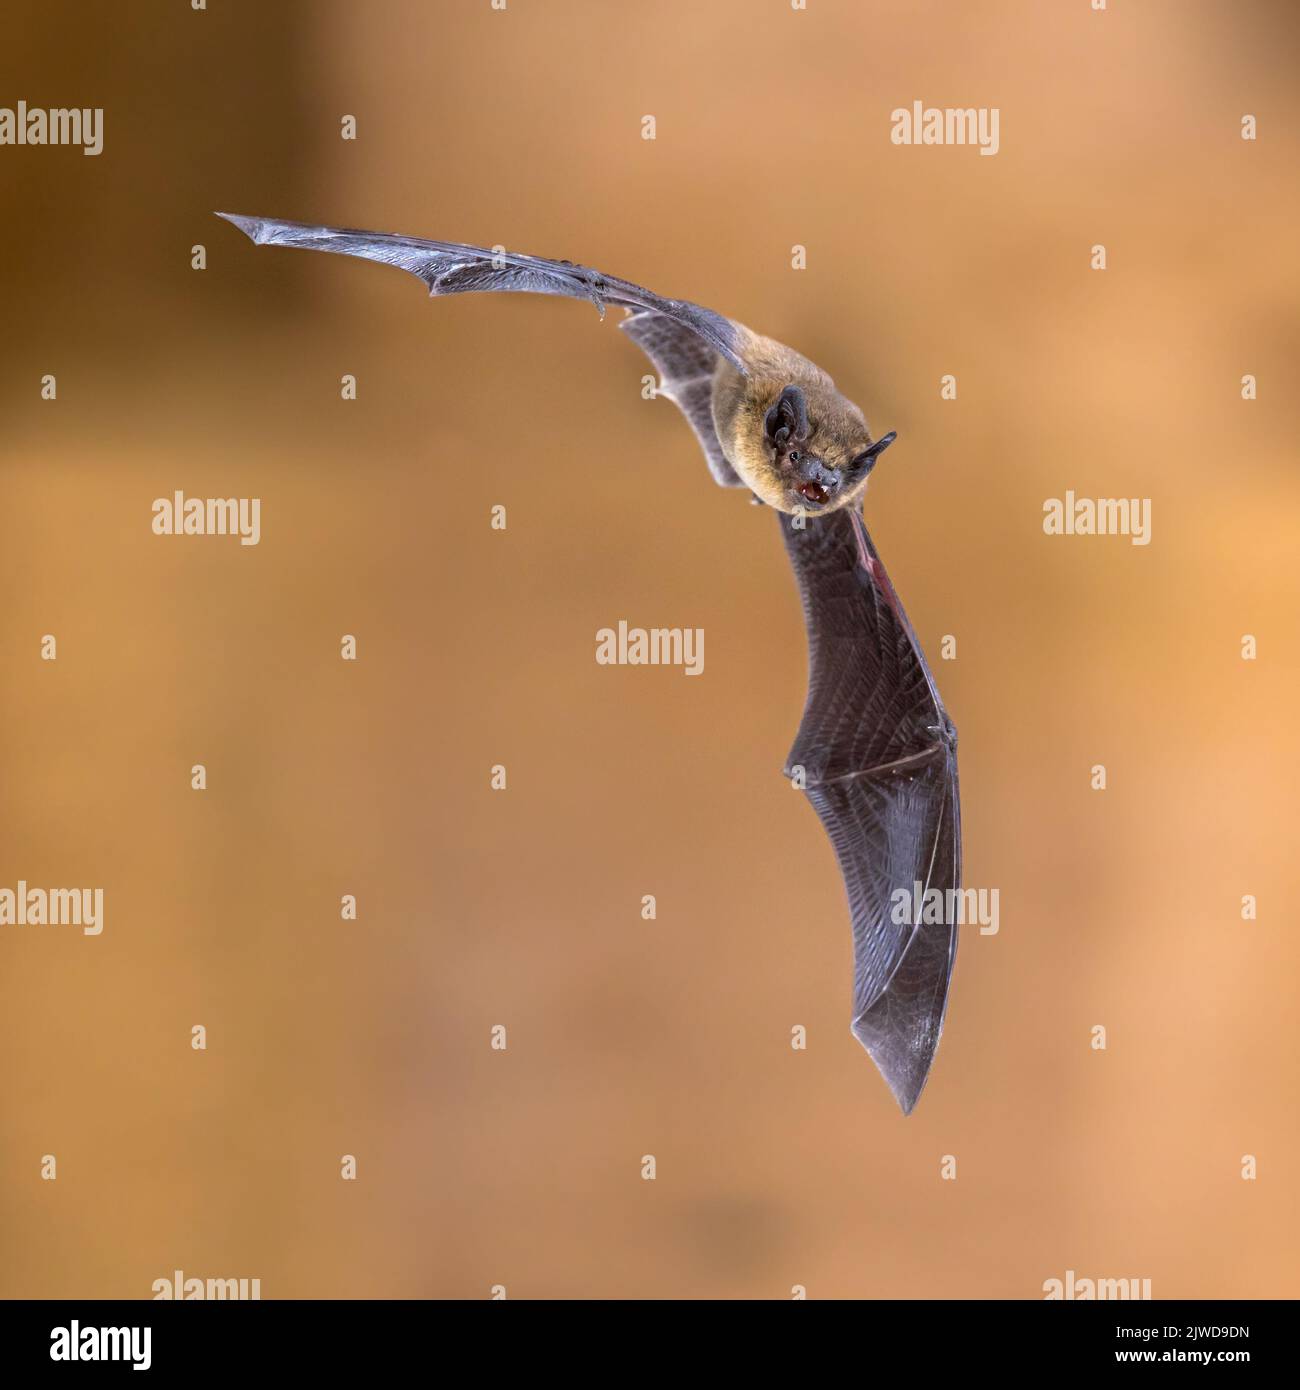 Volador de pipistrelle bat (Pipistrellus pipistrellus) Espectacular maniobra de acción rodada sobre el ático de madera de la casa con fondo brillante Foto de stock